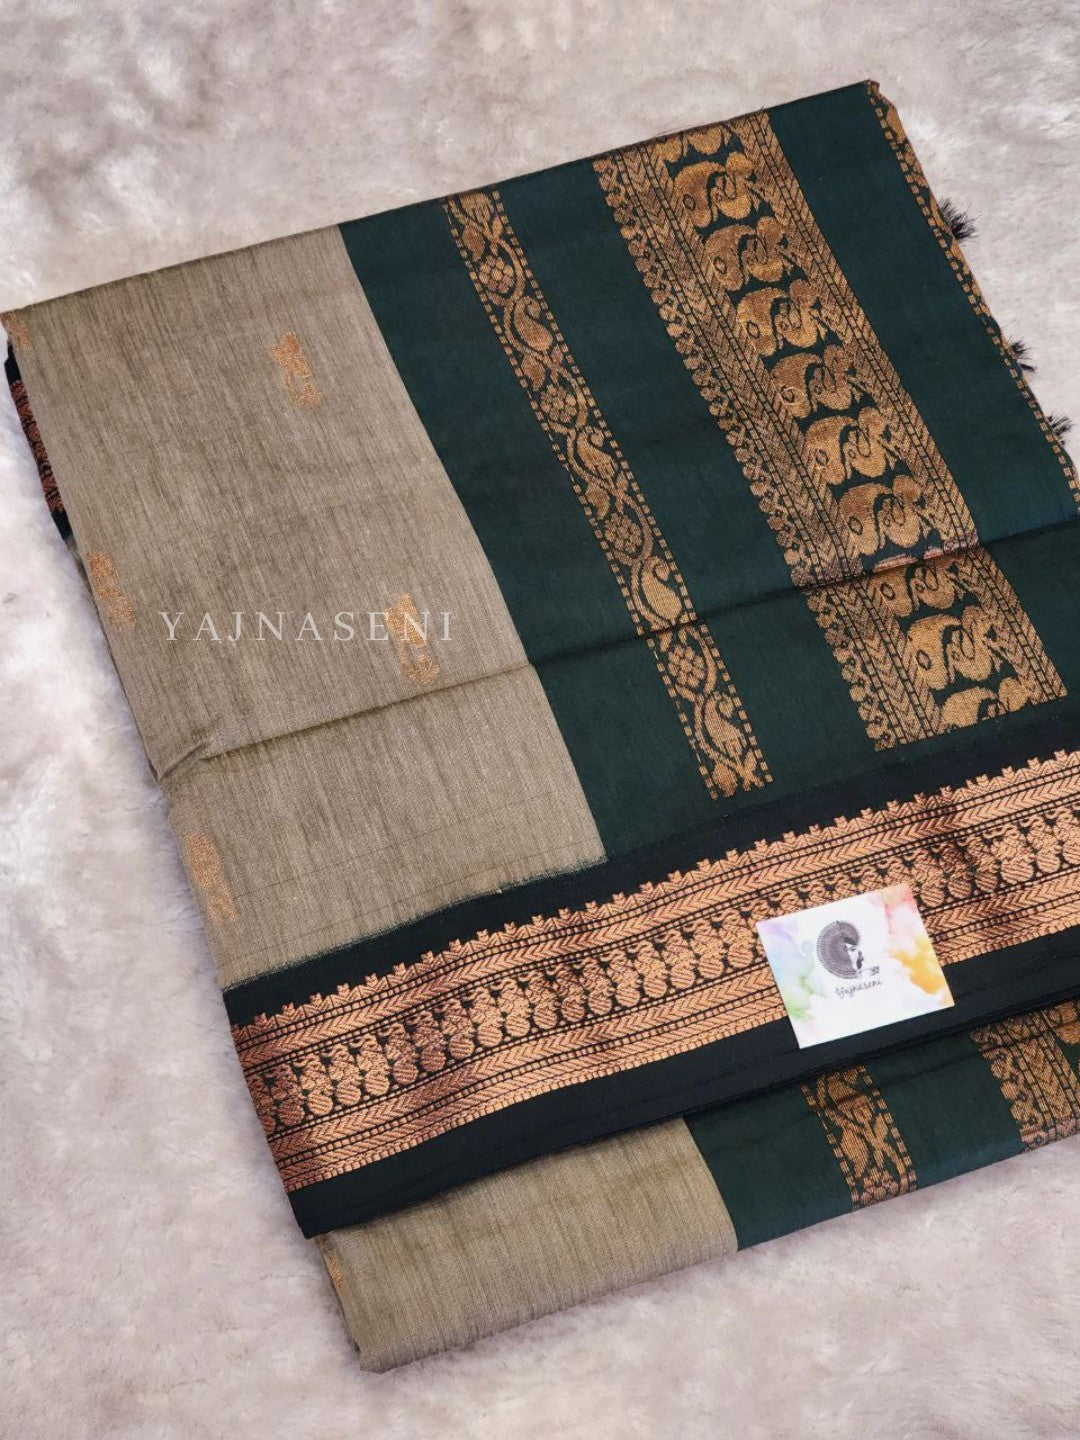 ✨ Wearing kalyani cotton saree from @devipriyaexports . Green